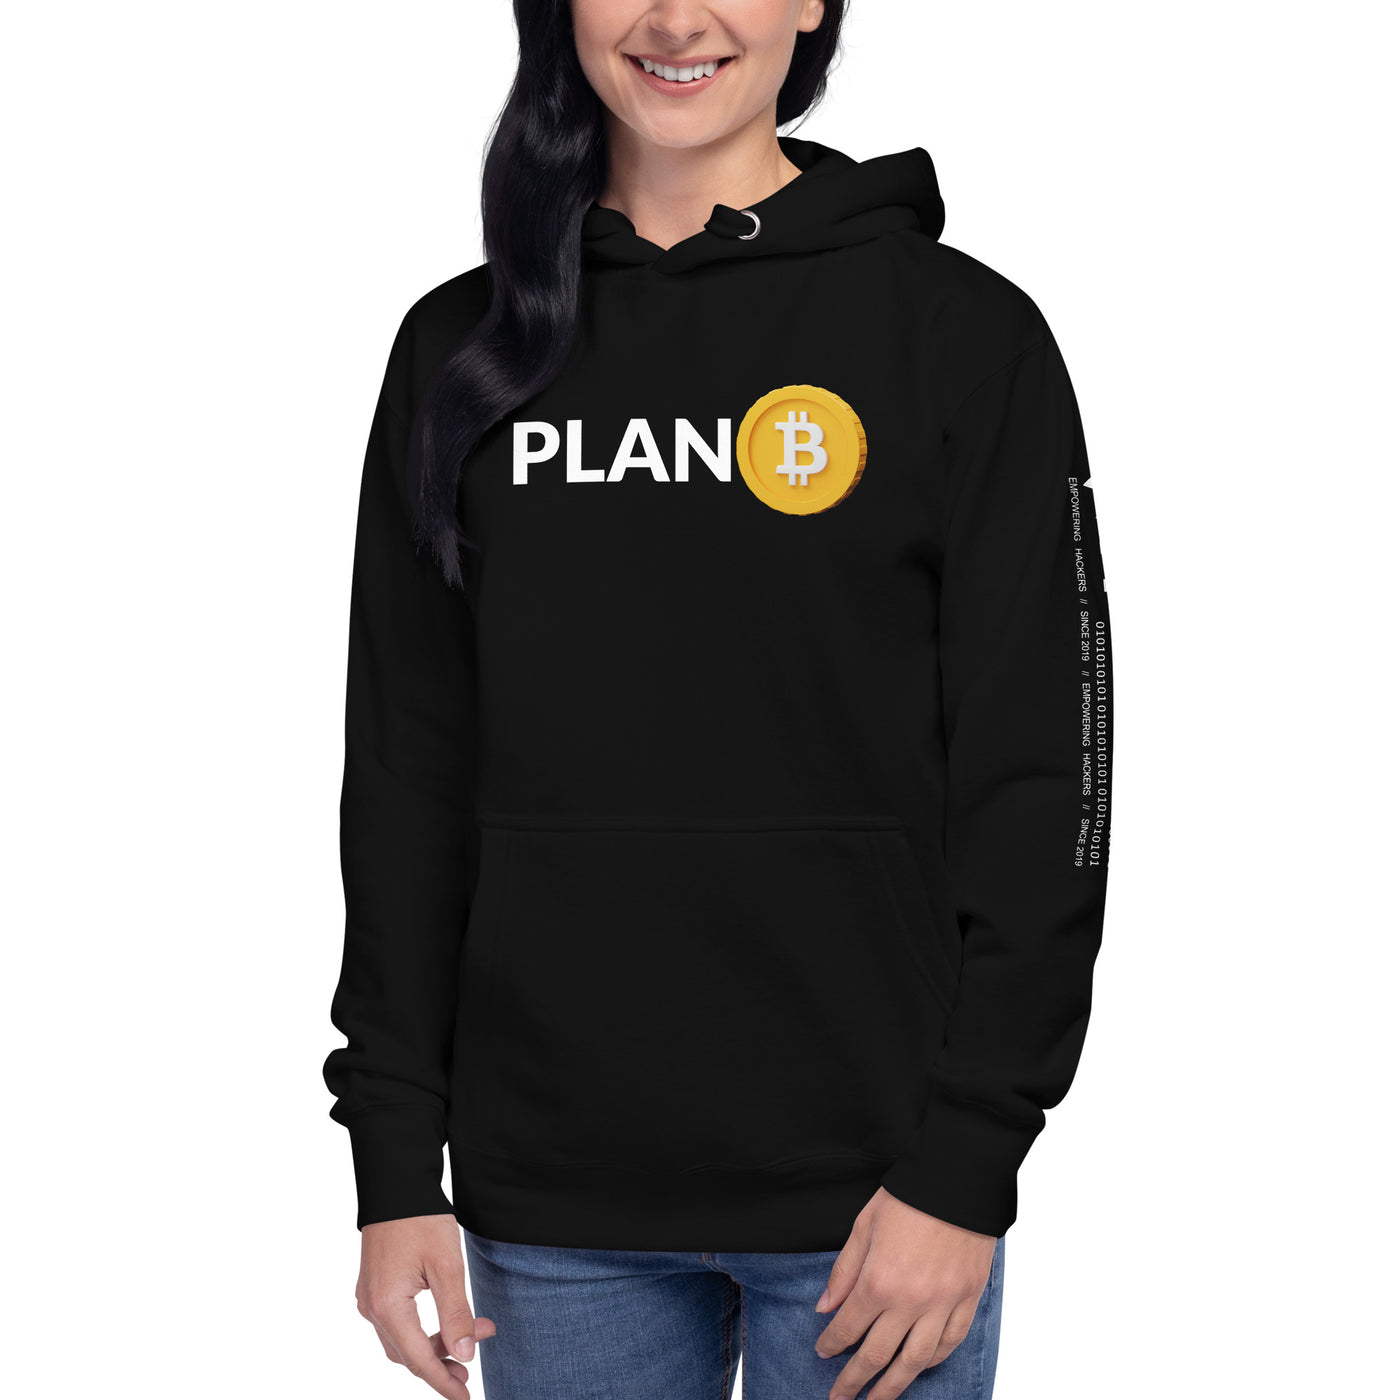 Plan B V6 Unisex Hoodie